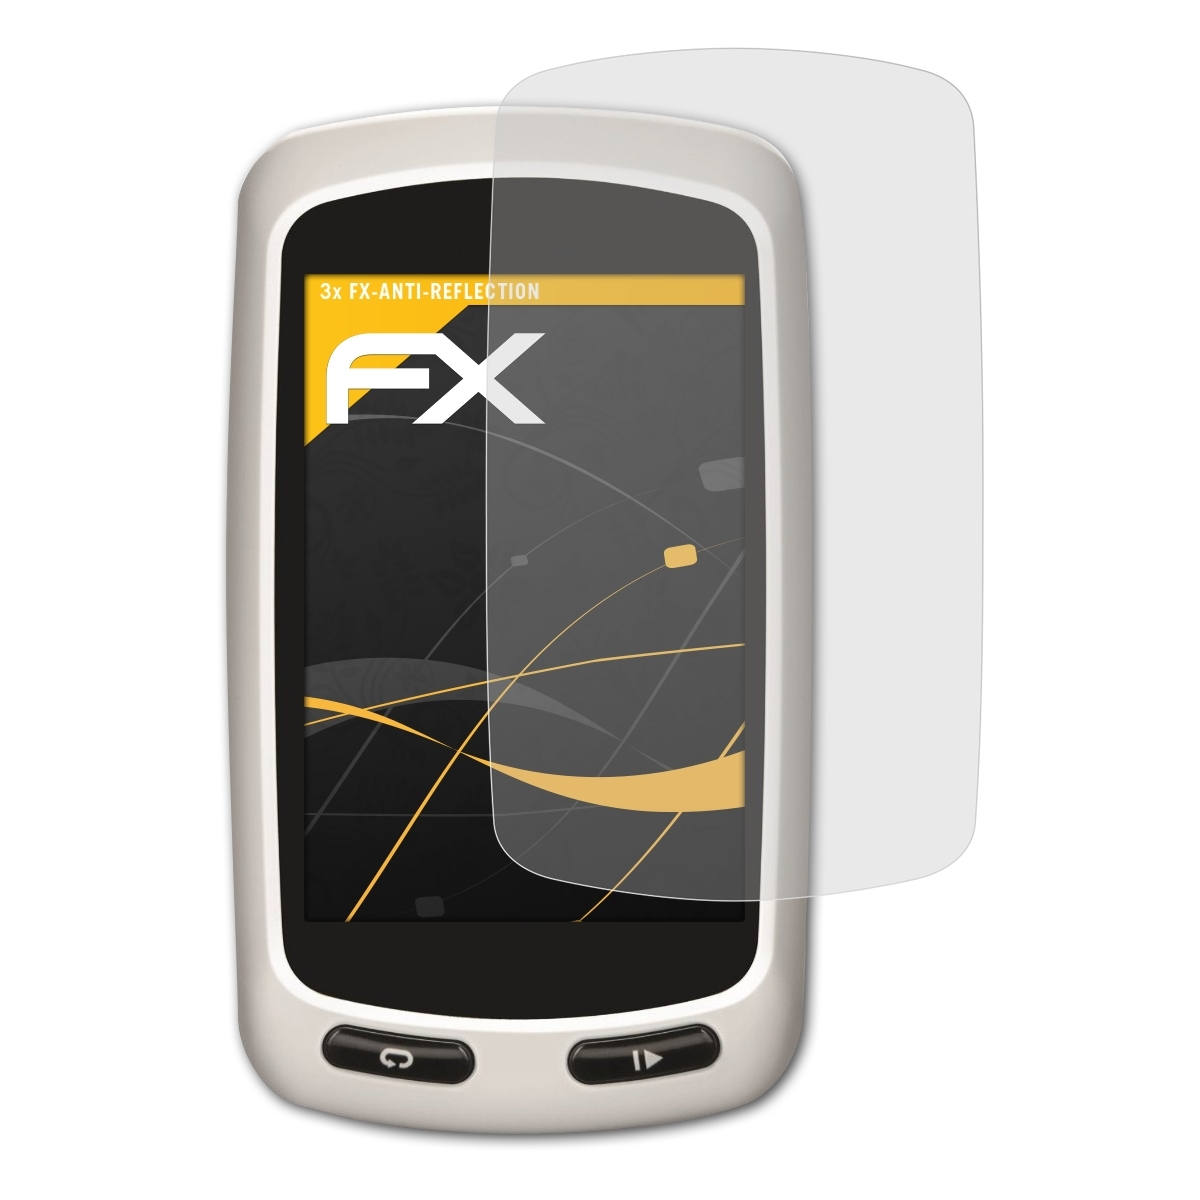 Touring) FX-Antireflex Garmin 3x ATFOLIX Edge Displayschutz(für